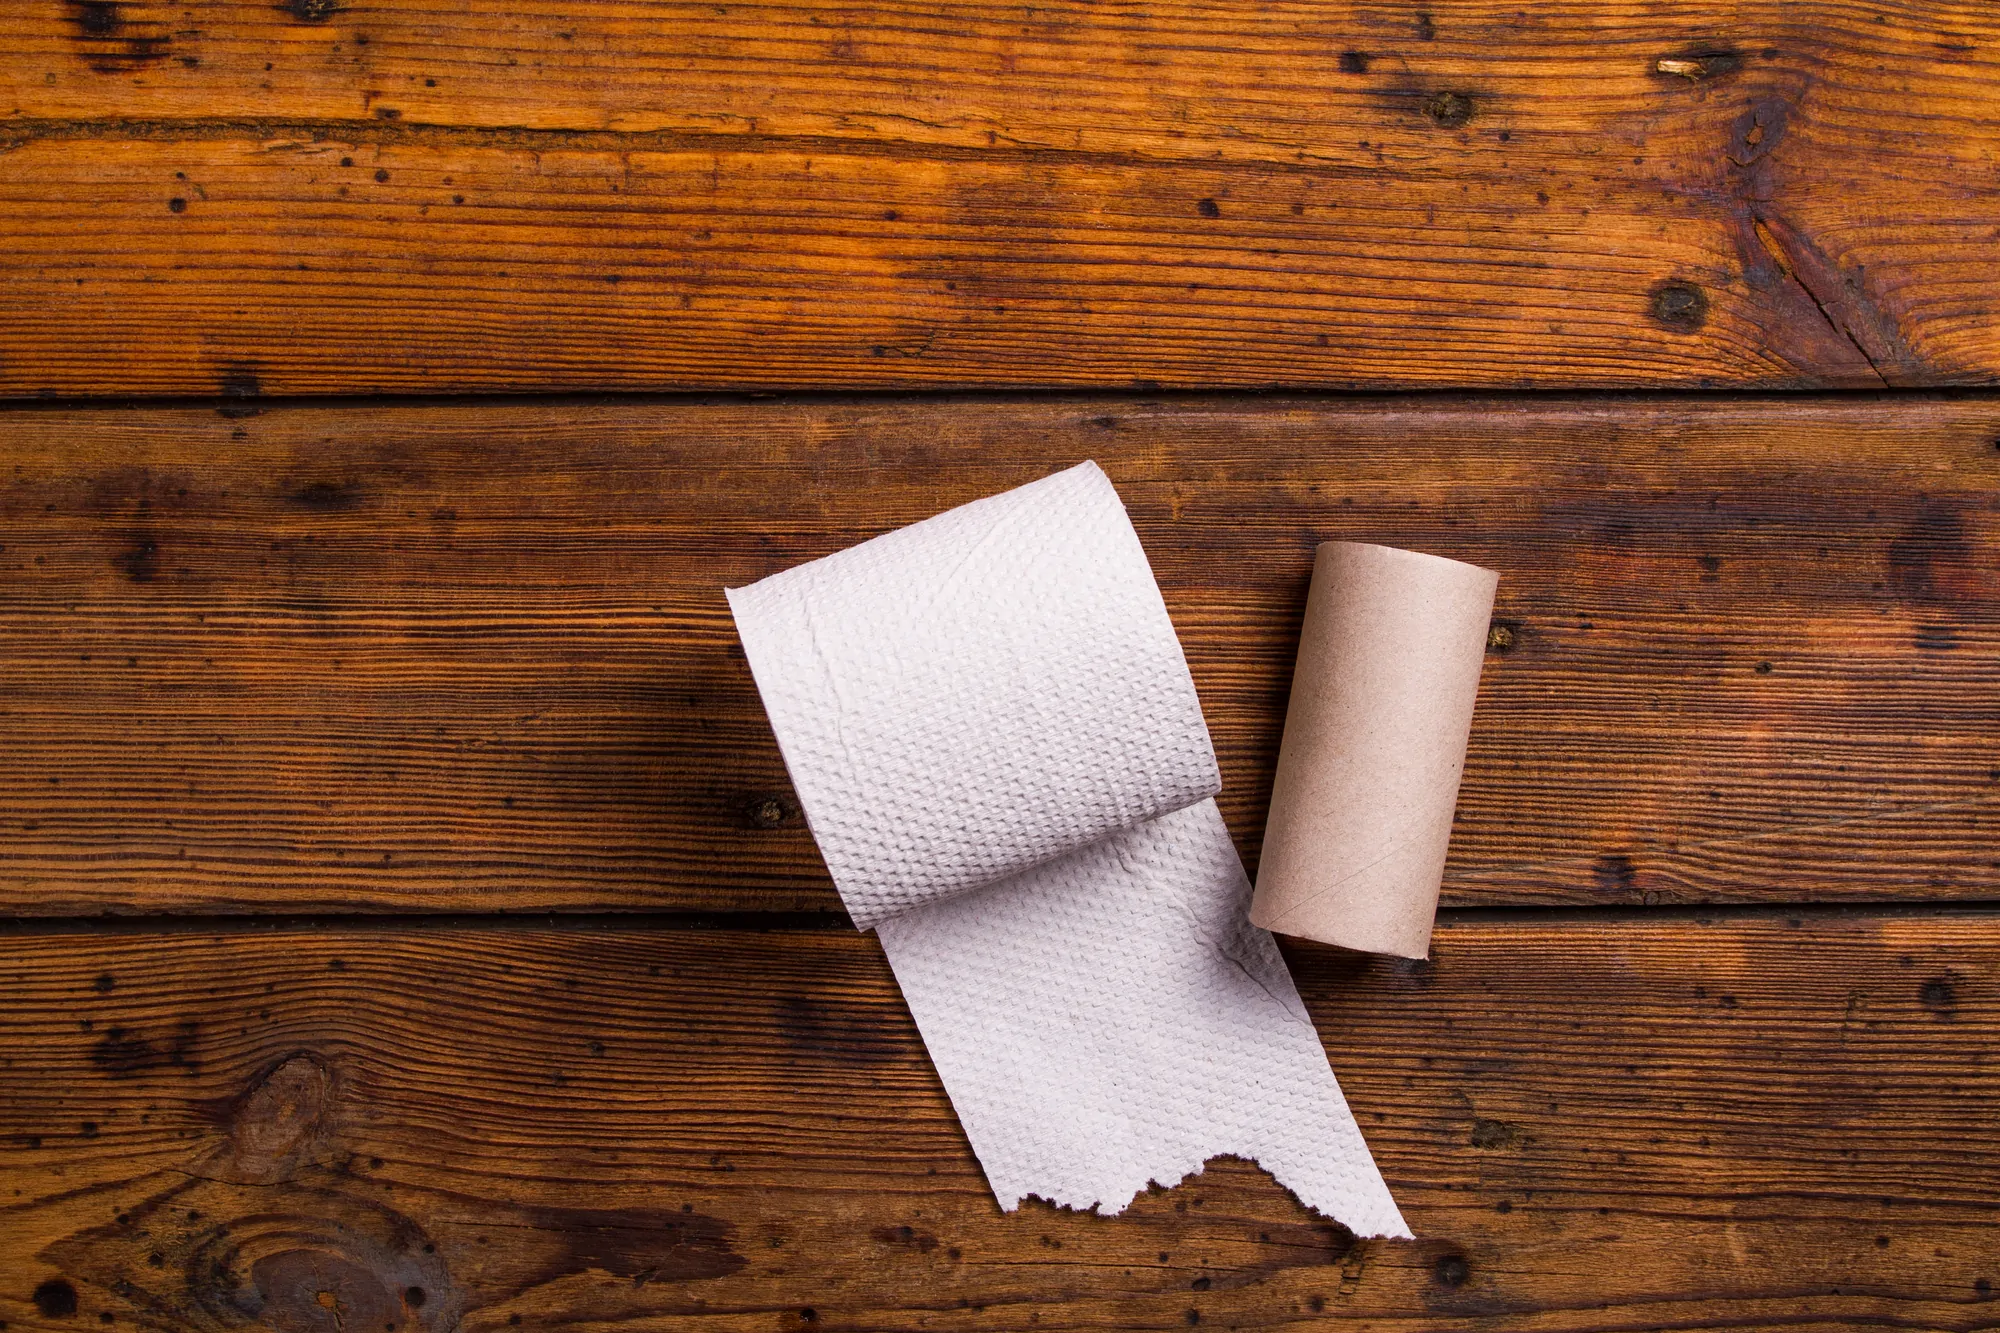 Toilet paper against wood flooring